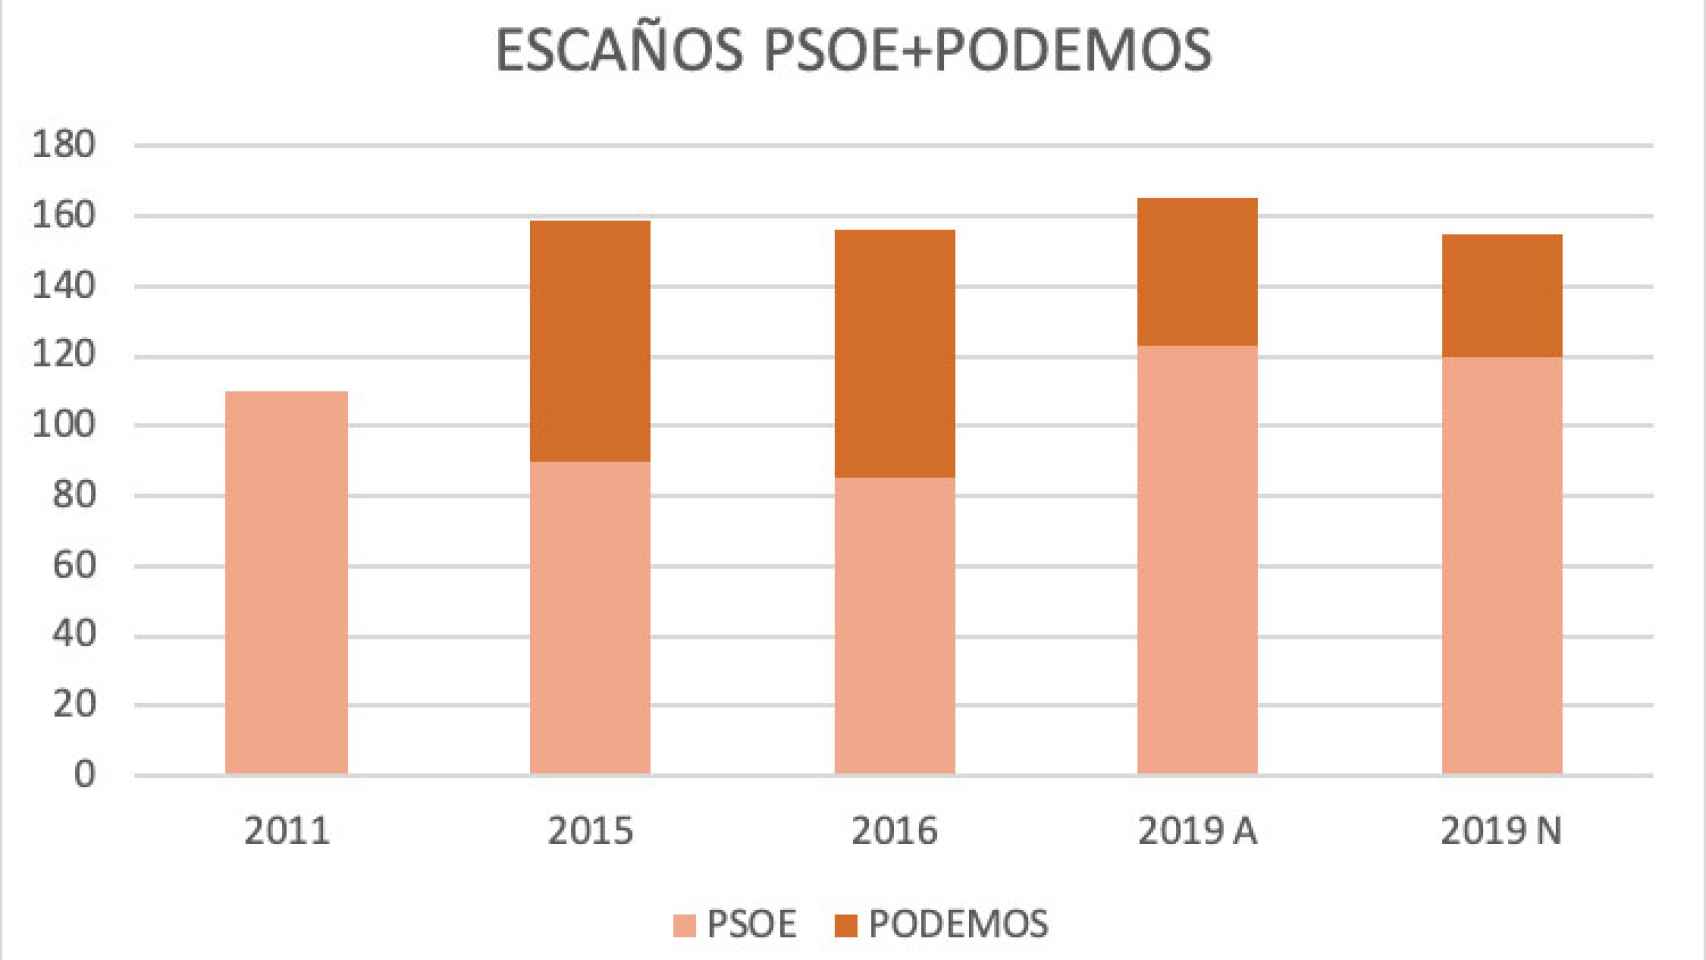 Escaños PSOE + Podemos entre 2011 y 2019.